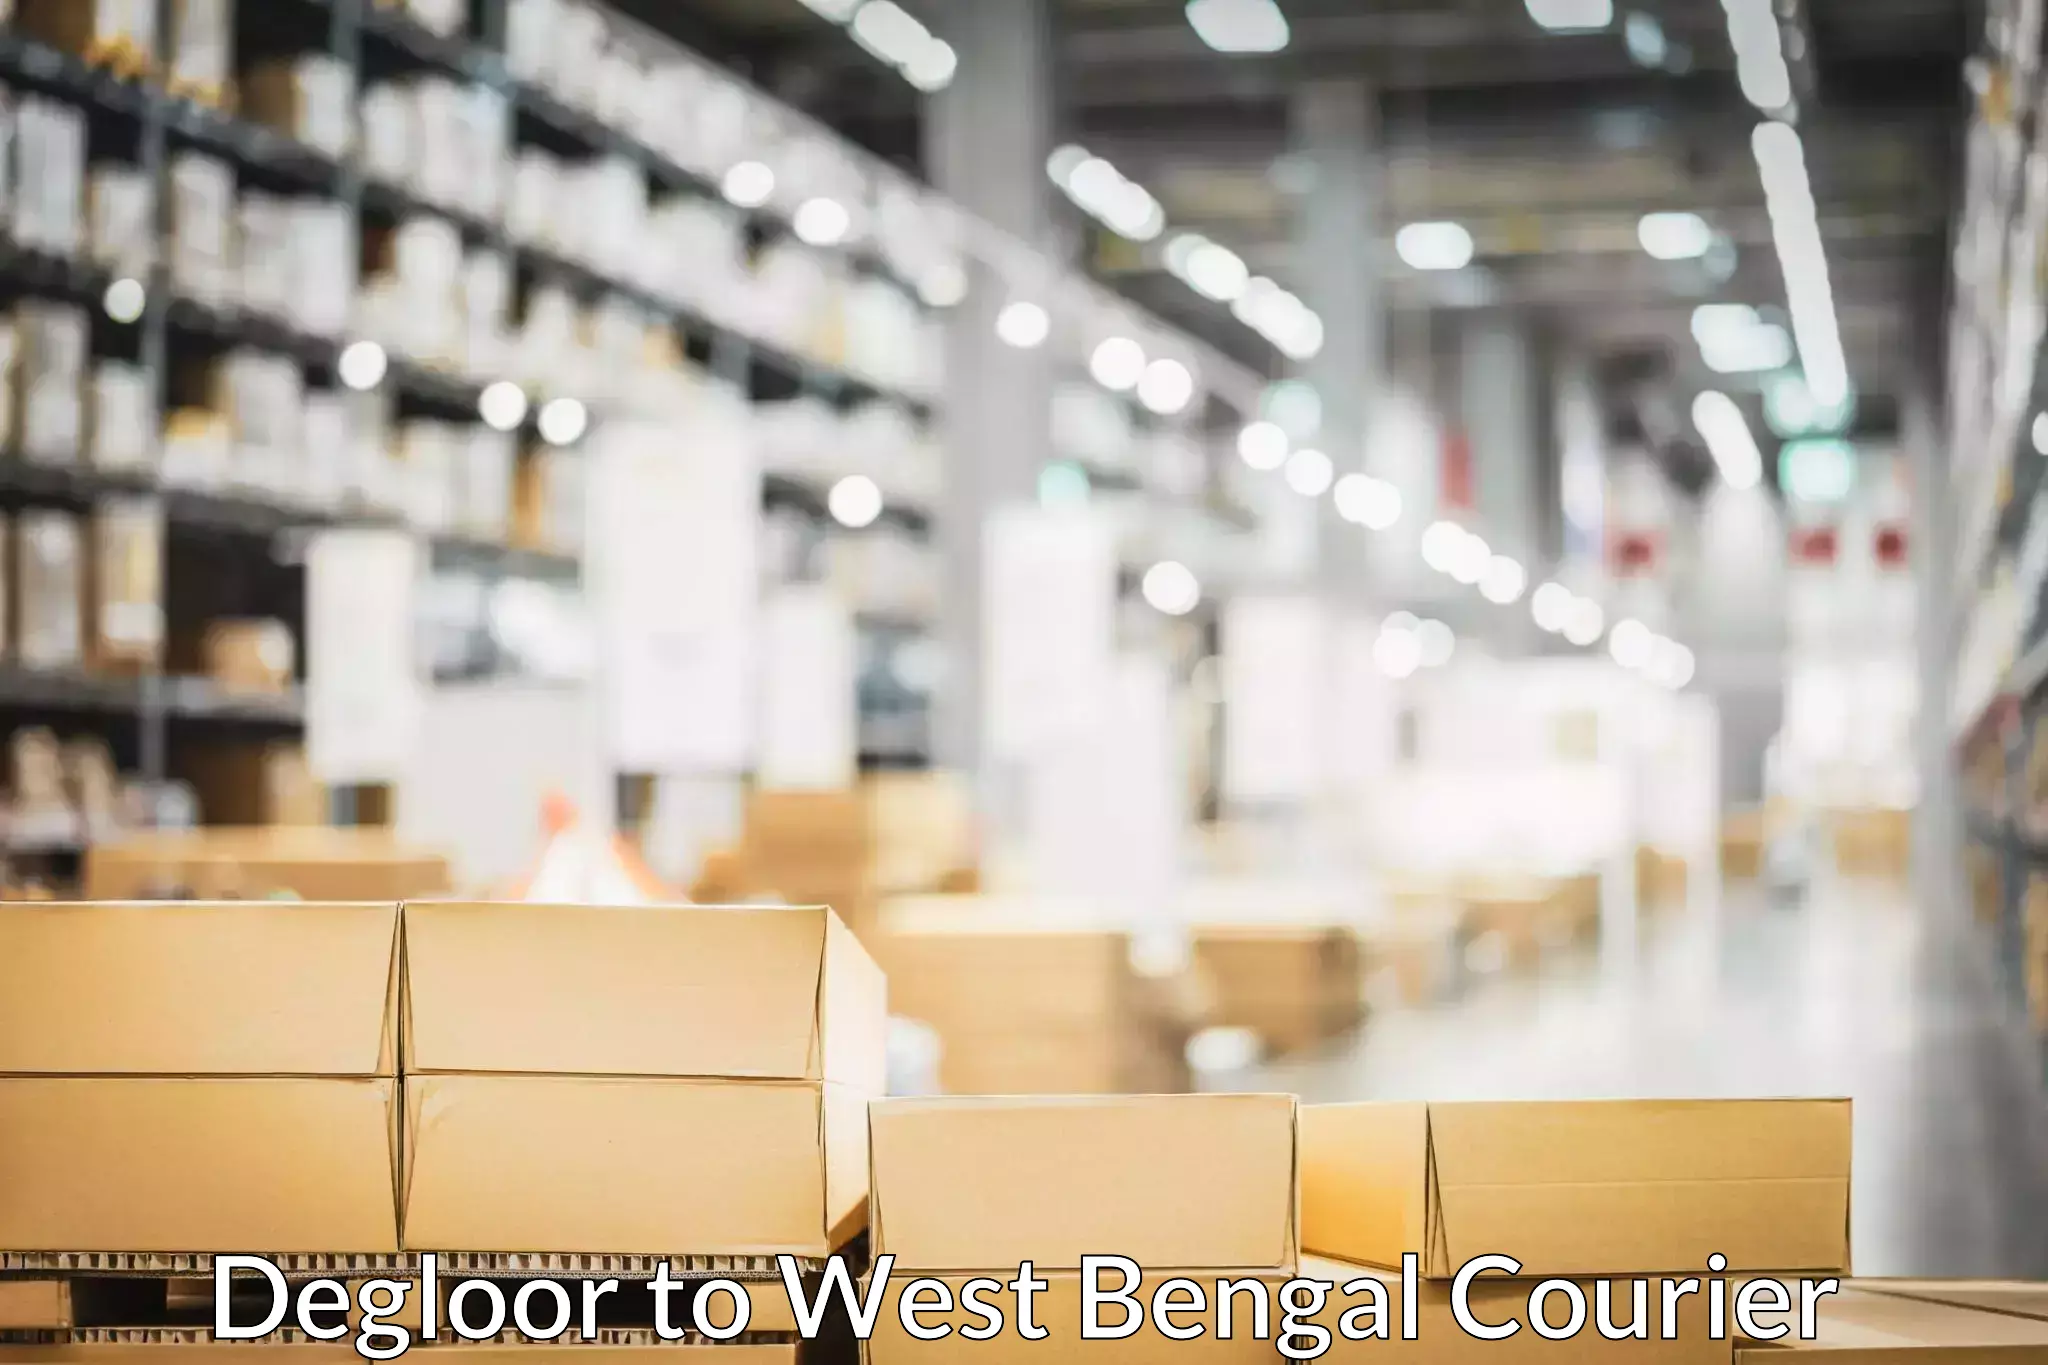 Comprehensive goods transport in Degloor to West Bengal